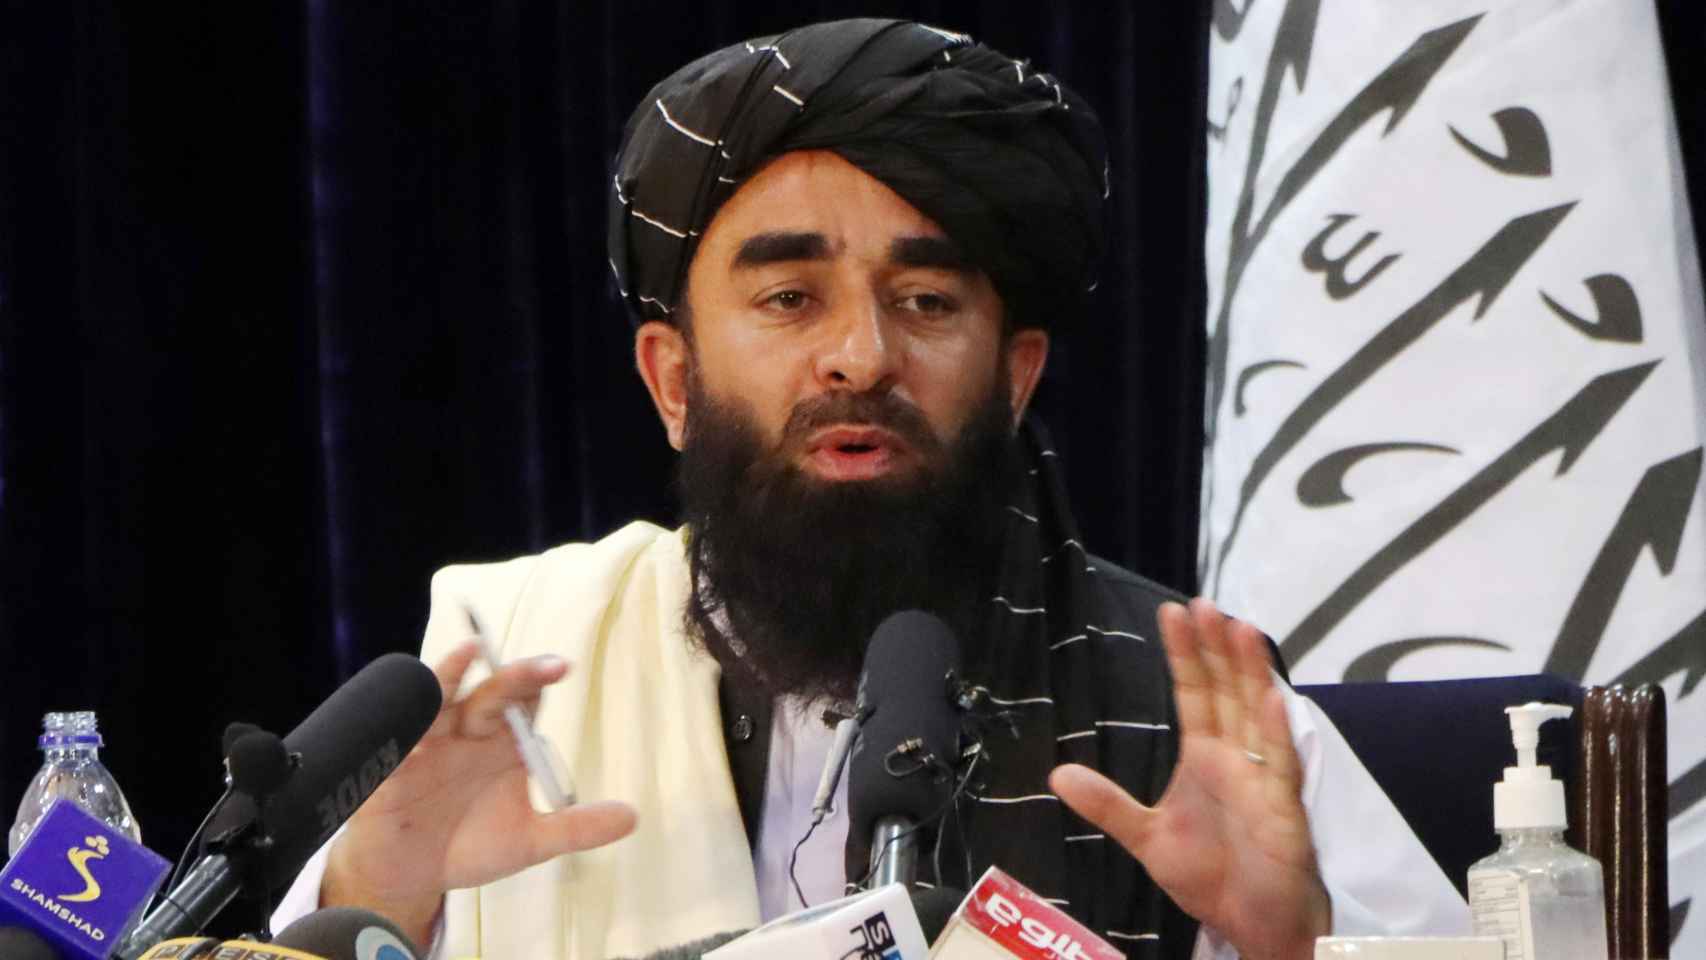 El portavoz talibán, Zabihullah Mujahid, en una rueda de prensa.